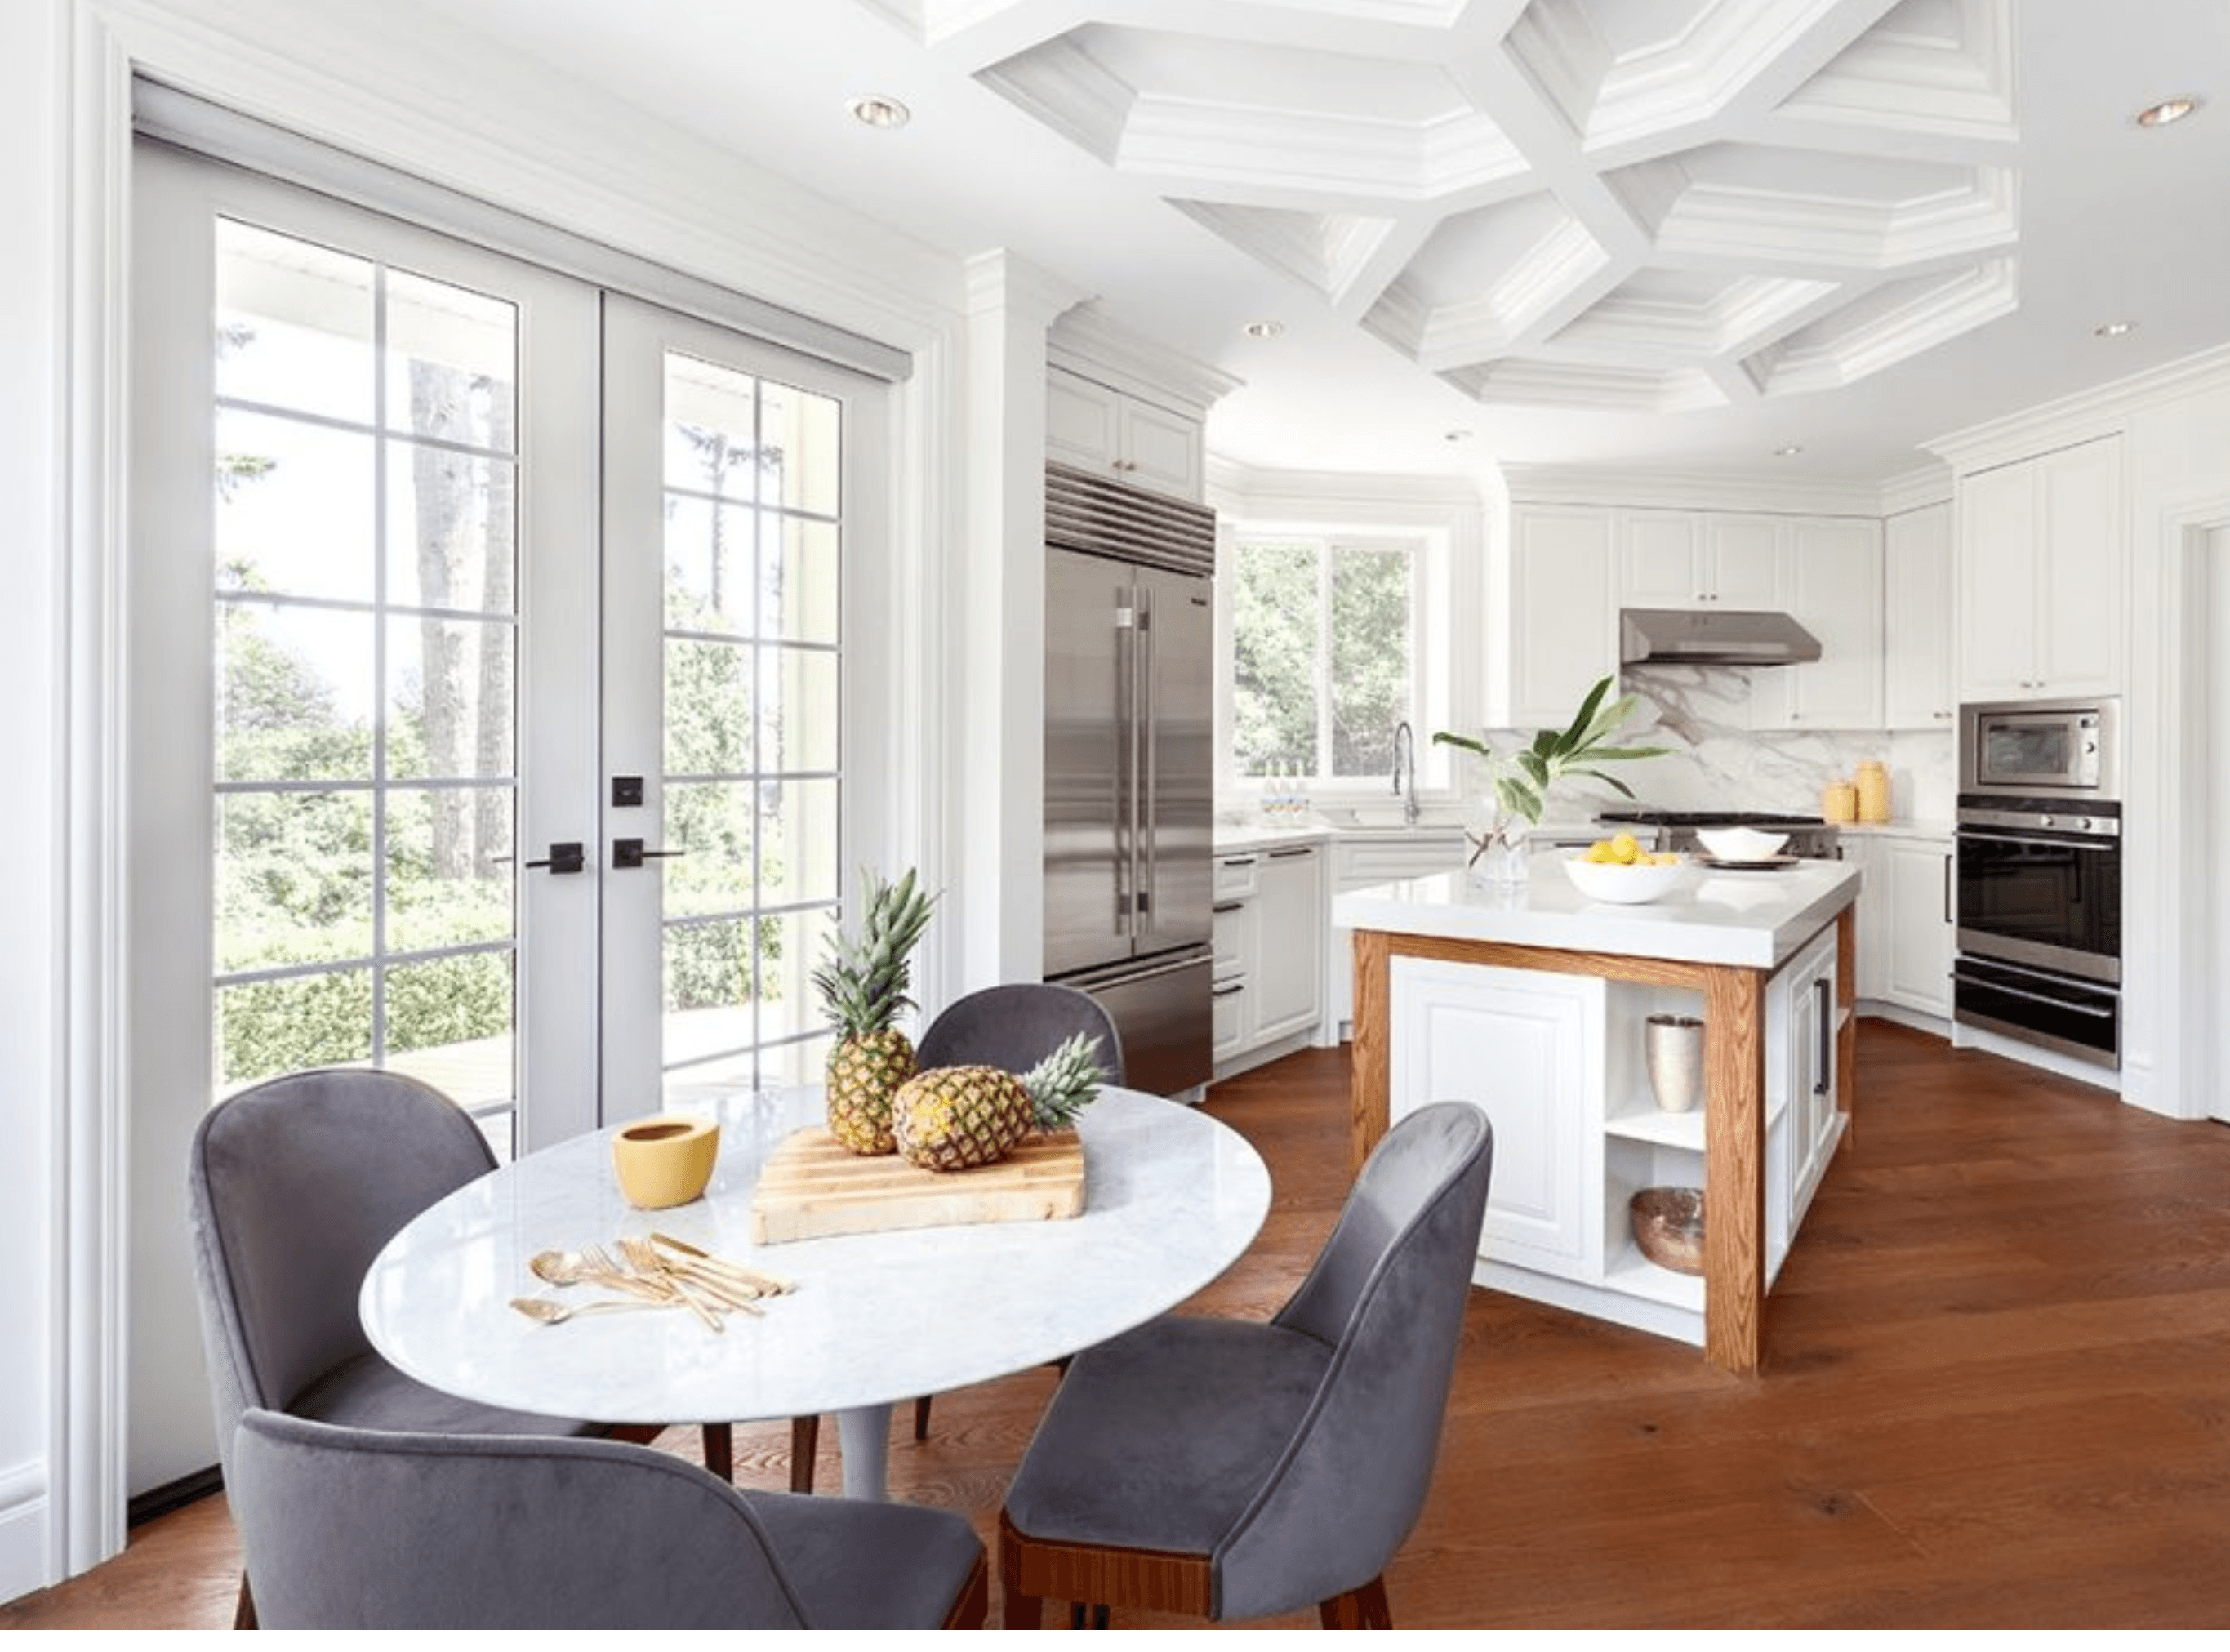 For Blog Only - Karin Bohn, House of Bohn - Honeycomb Coffered Ceiling Kitchen